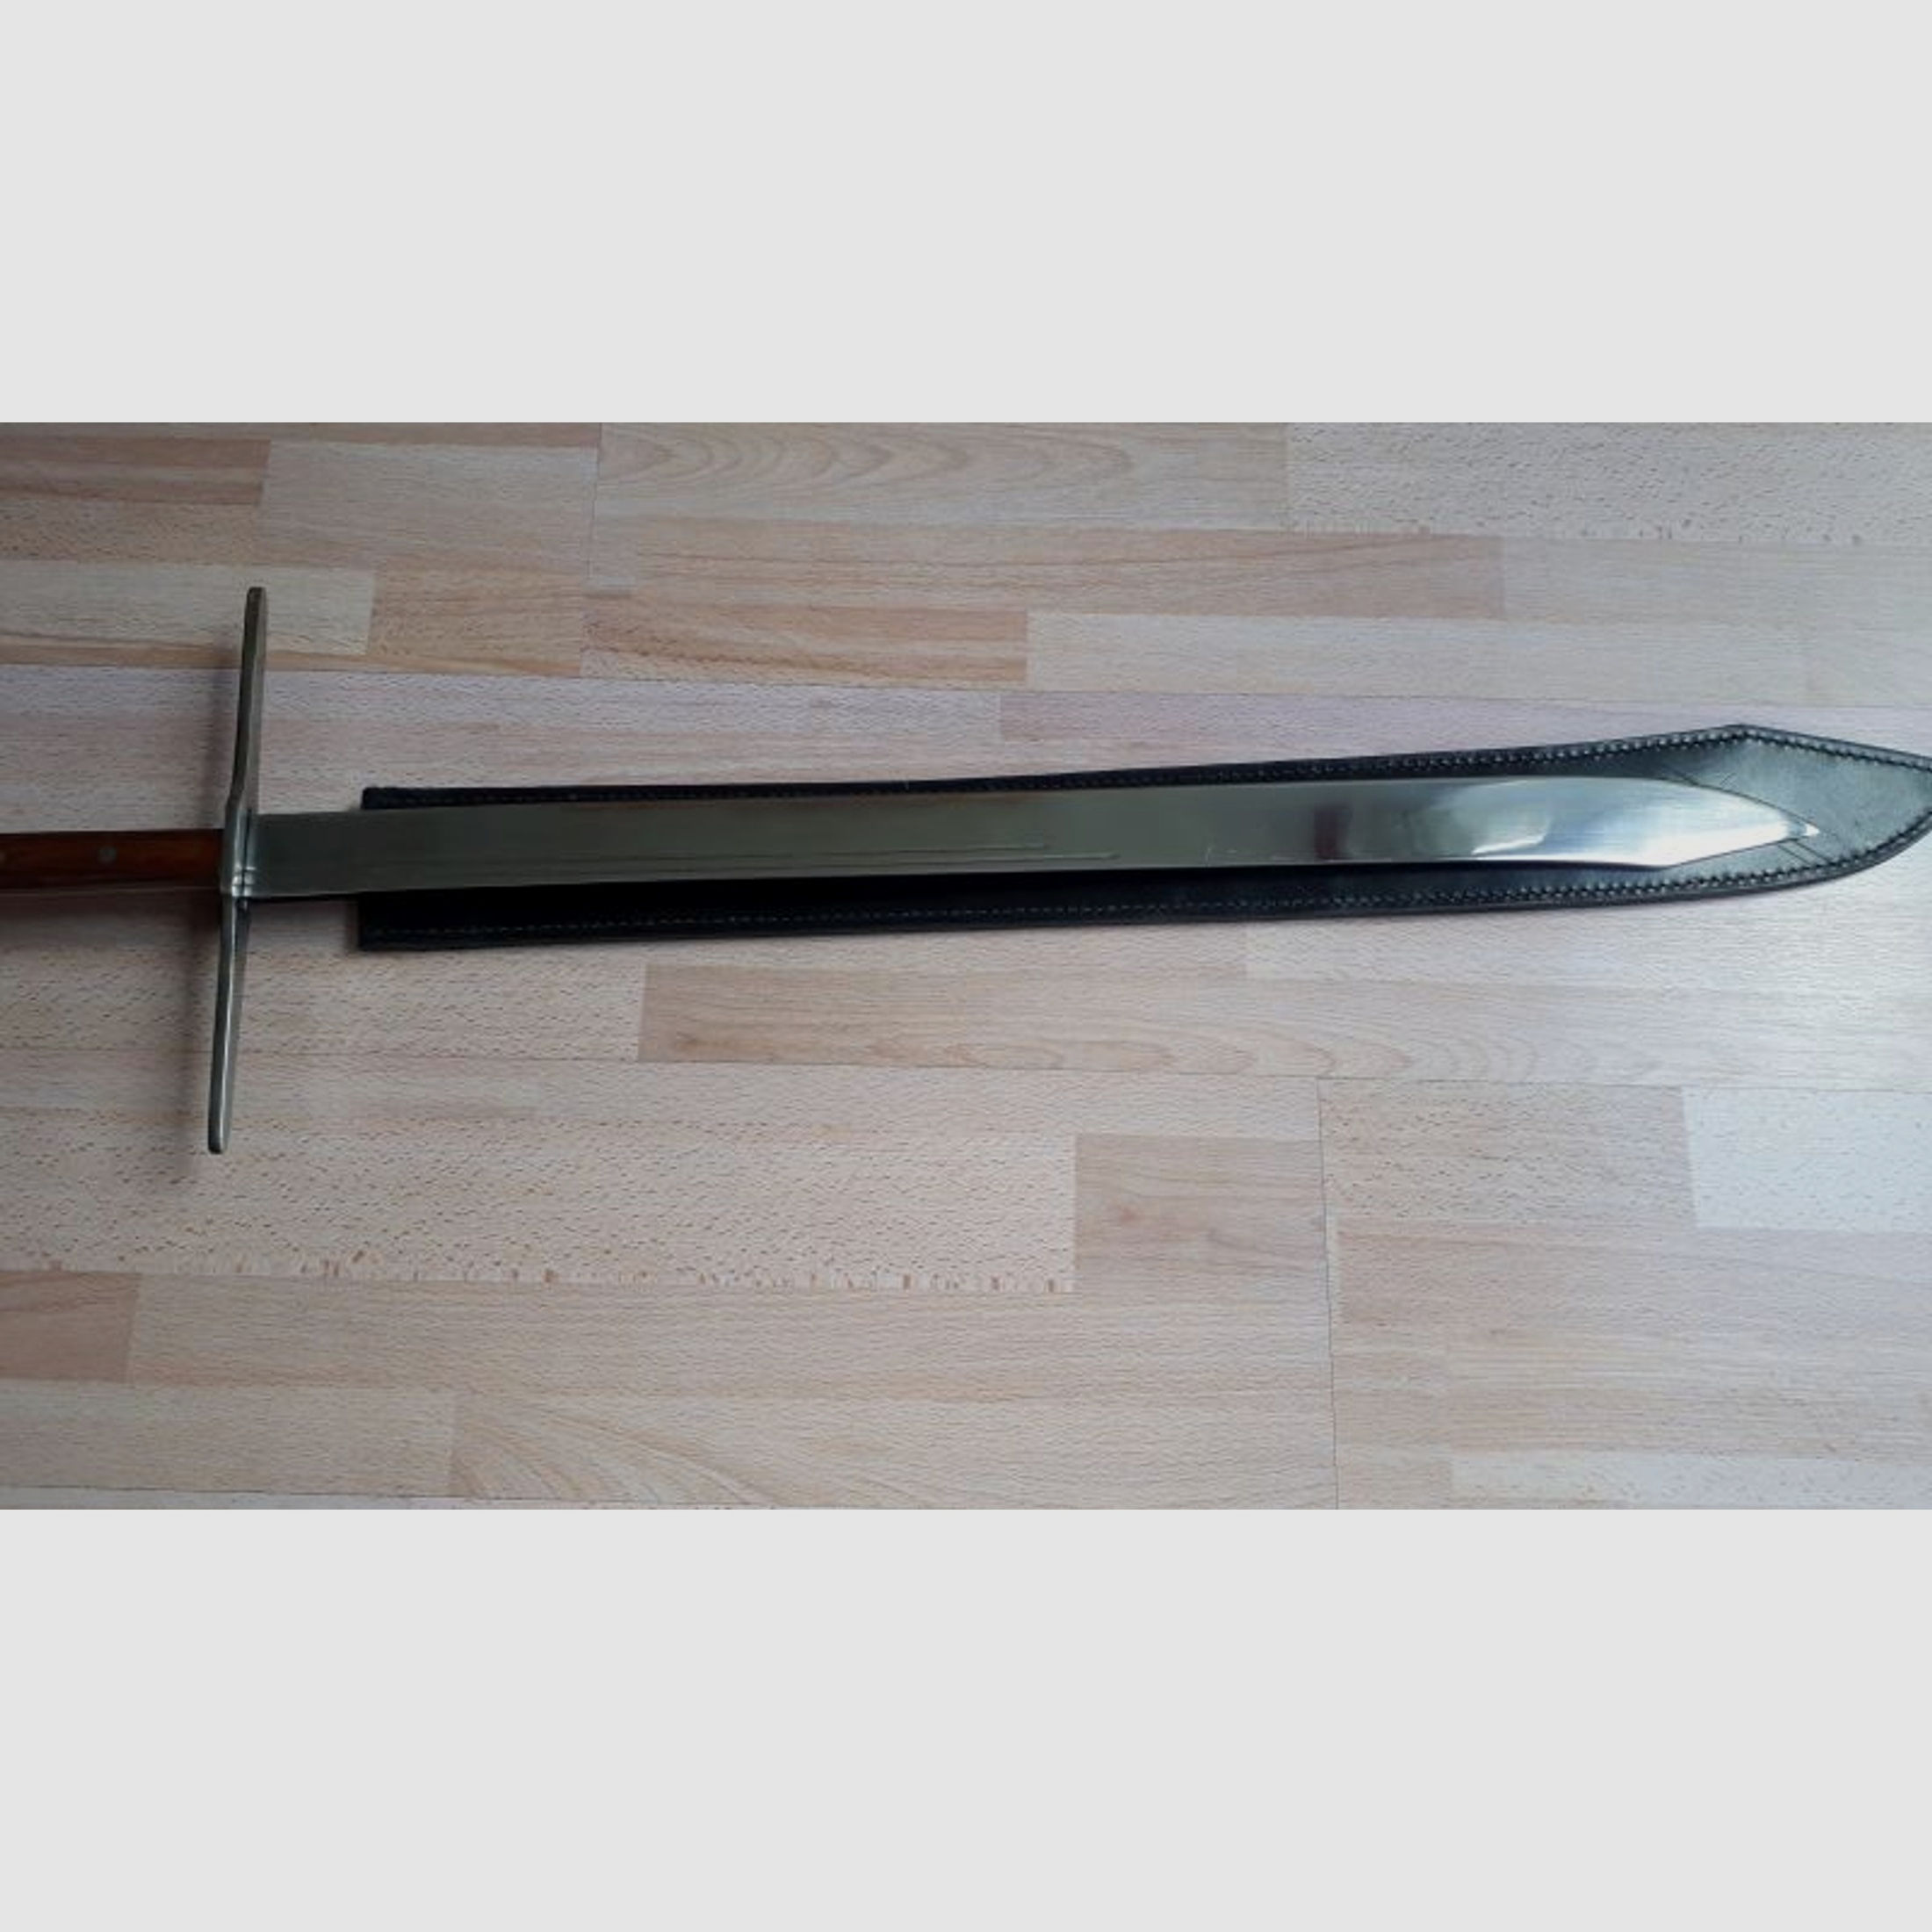 Großes Messer, von Haller Stahlwaren, in OVP & schwarzer Lederscheide, geschärft